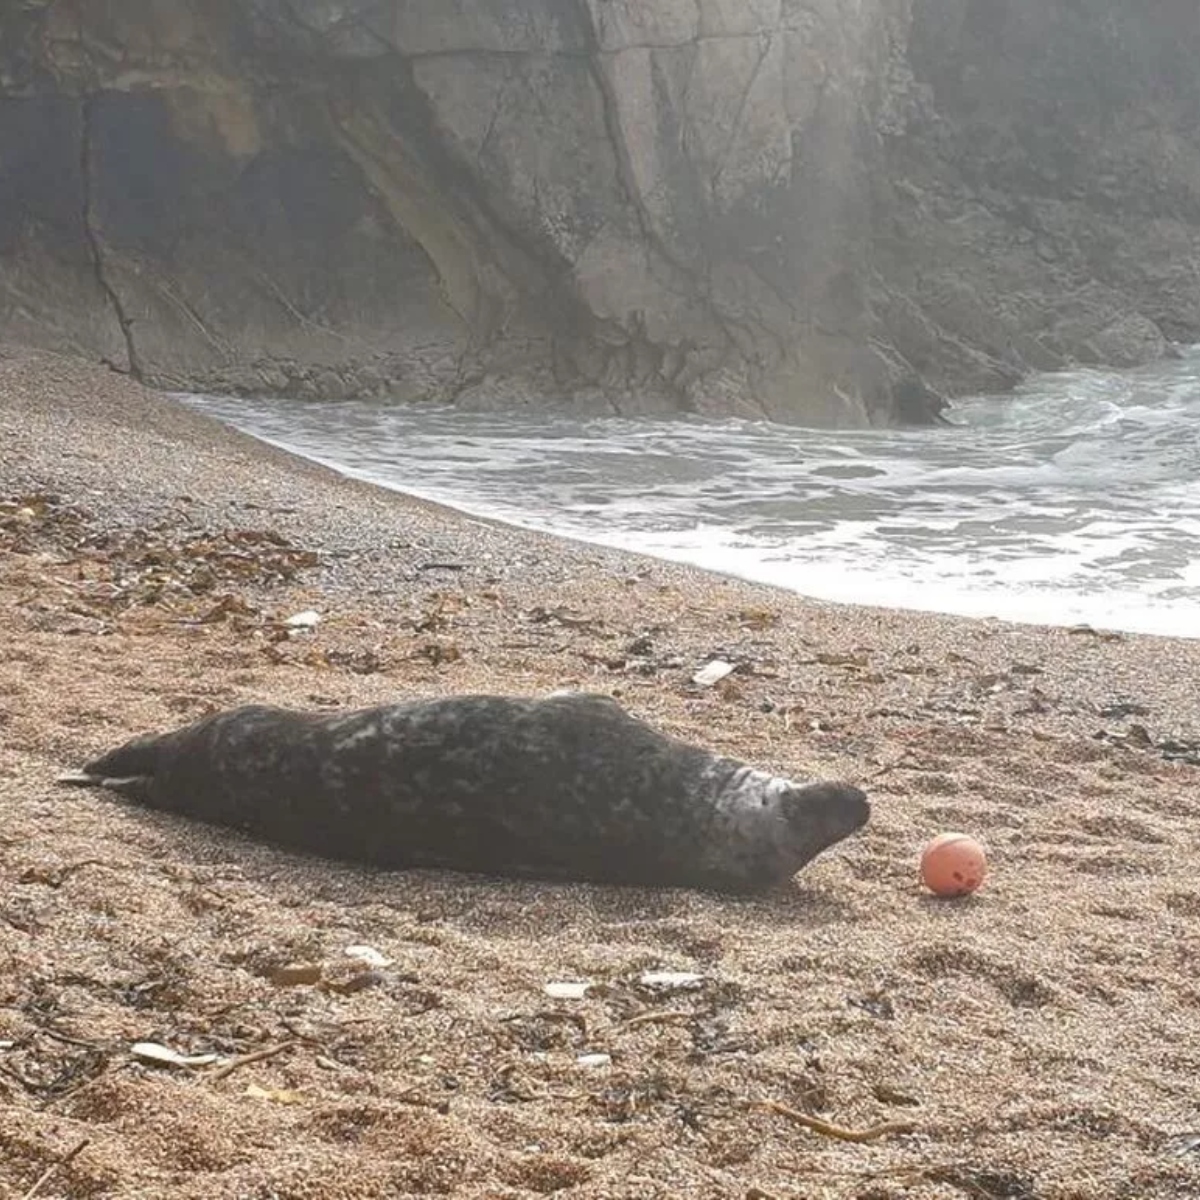  Polícia isola praia para que foca possa relaxar ao sol; veja imagens 